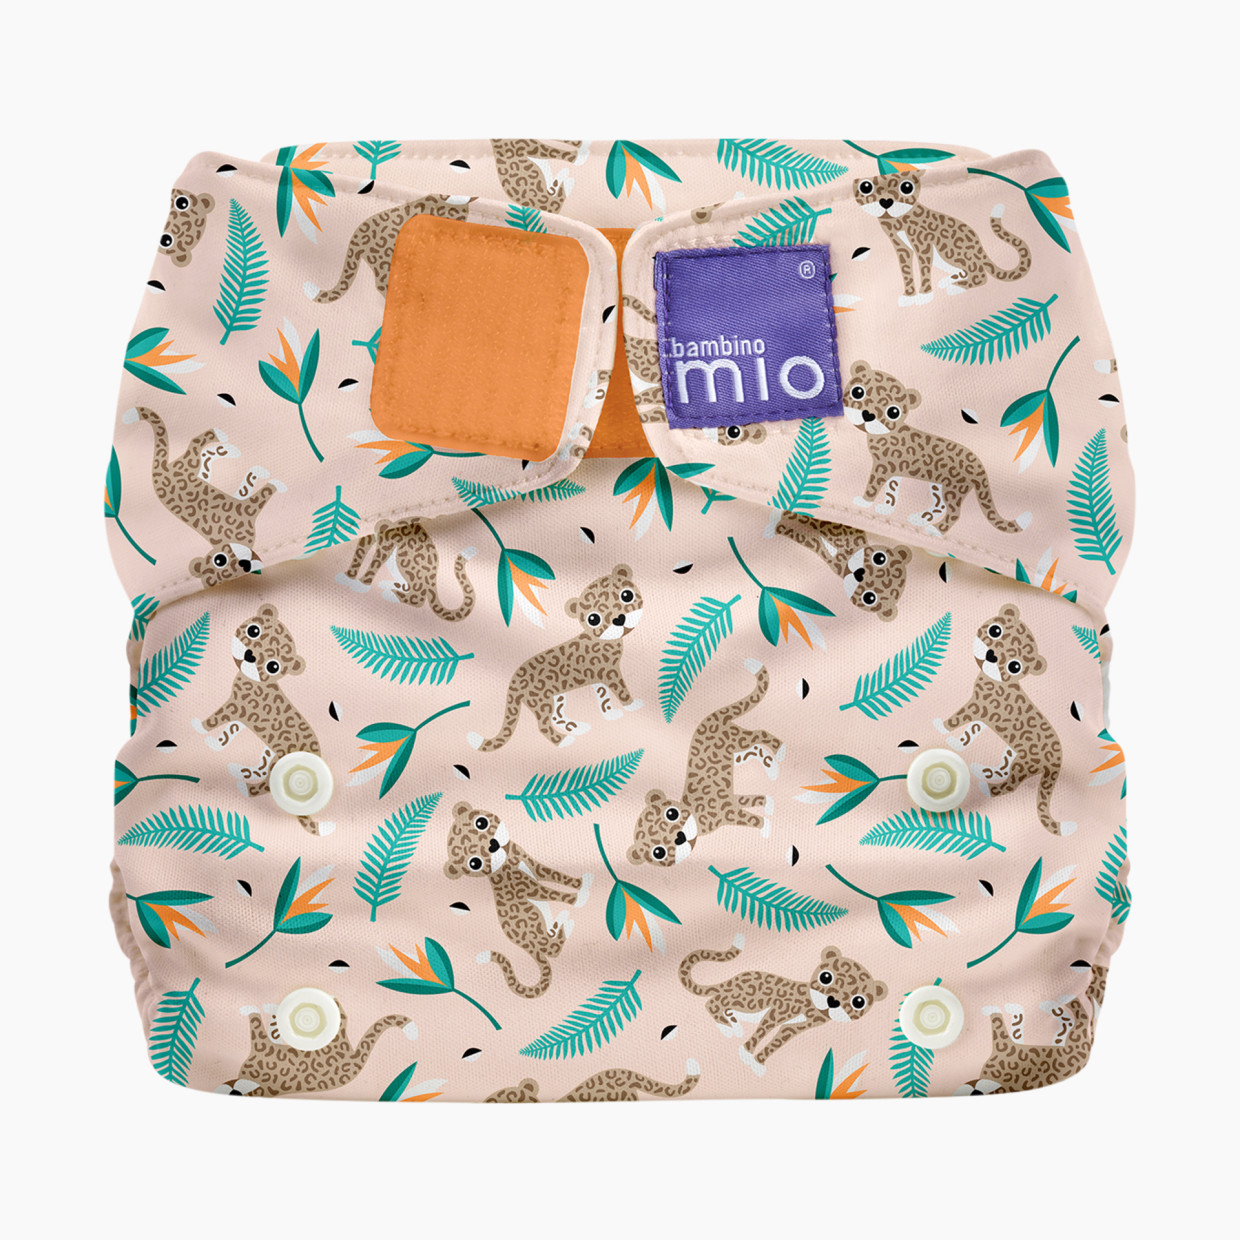 Bambino Mio Miosolo Classic Cloth Diaper - Wild Cat, One Size (8-35 Lbs).